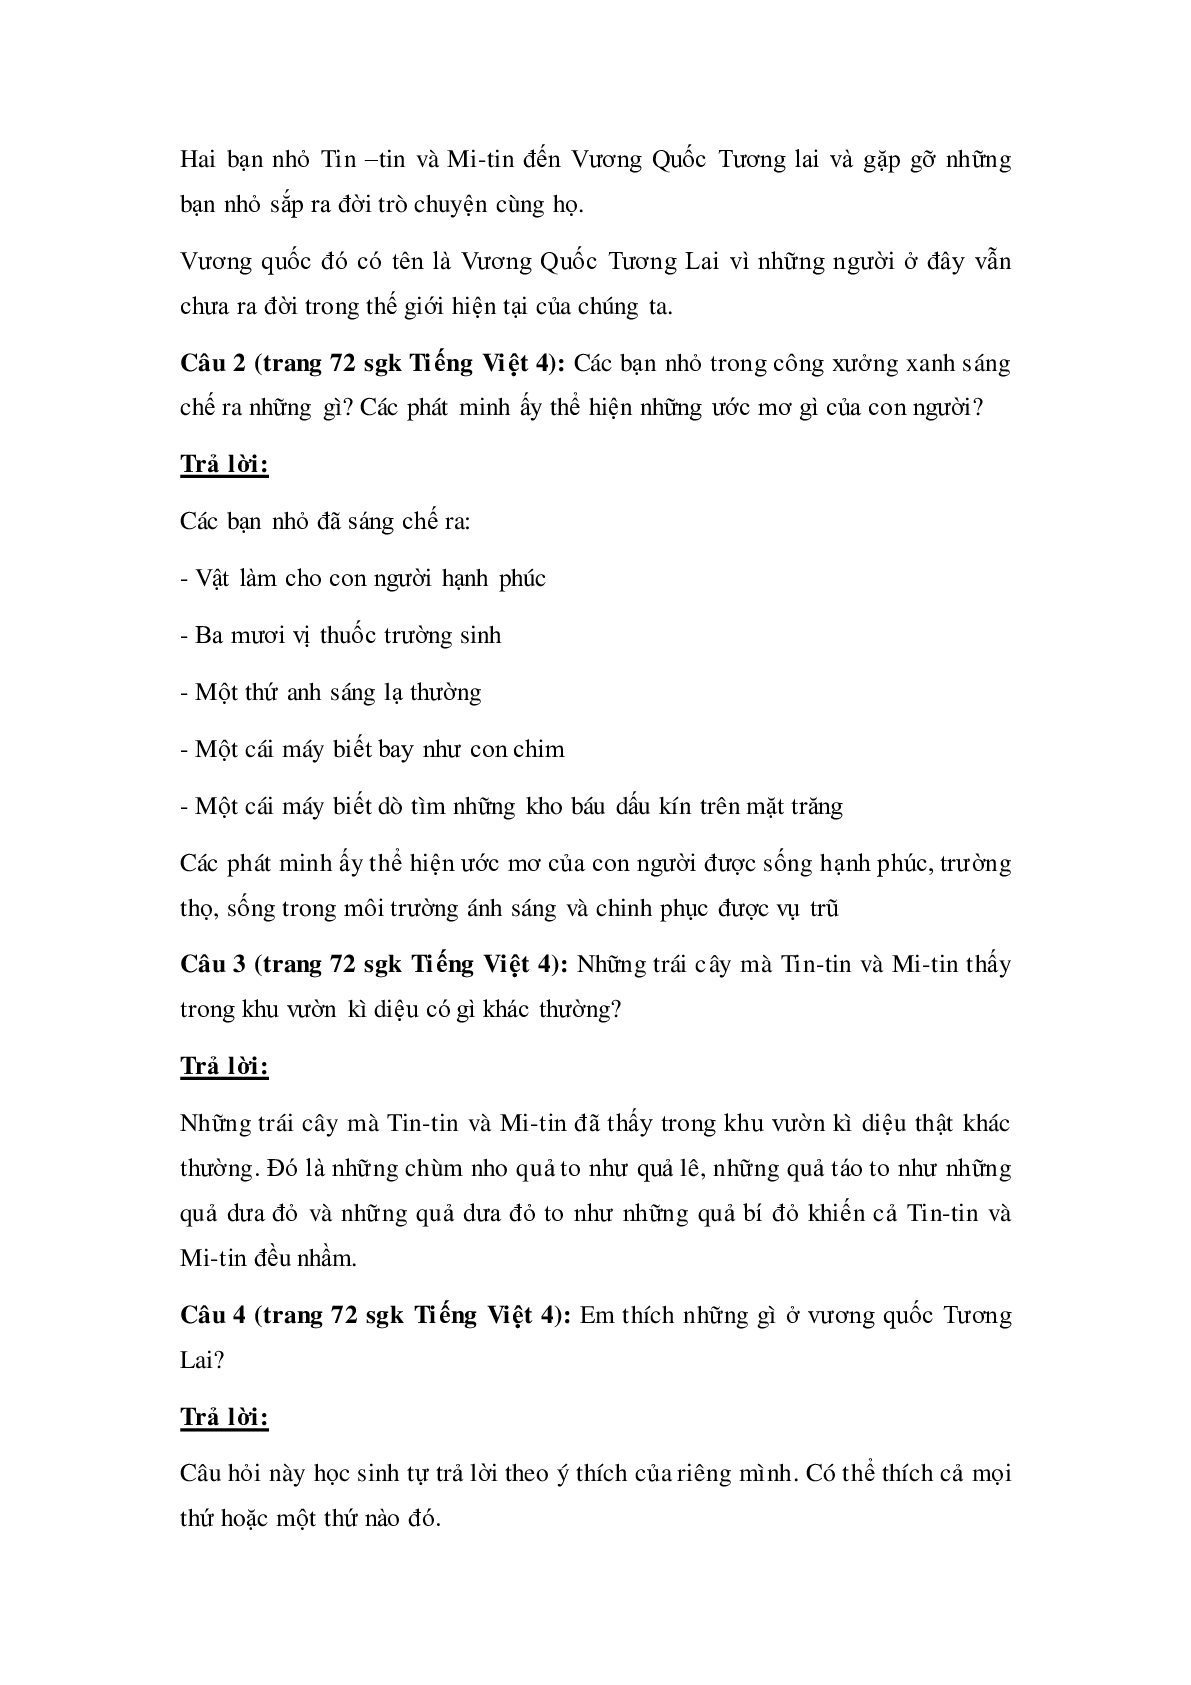 Soạn Tiếng Việt lớp 4: Tập đọc: Ở Vương quốc Tương Lai mới nhất (trang 3)